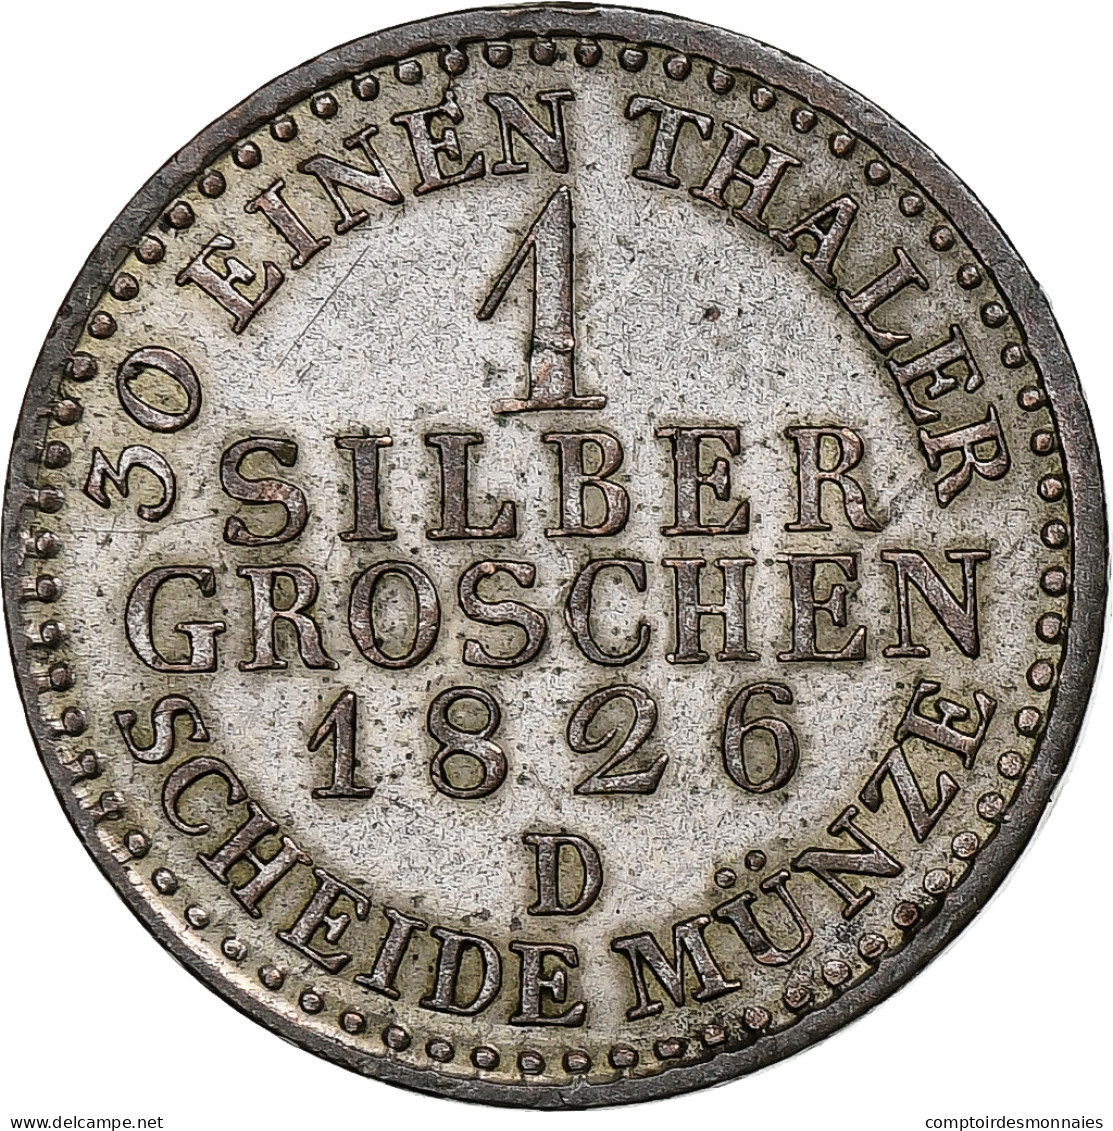 Allemagne, Friedrich Wilhelm III, Silber Groschen, 1826, Düsseldorf, Billon - Piccole Monete & Altre Suddivisioni